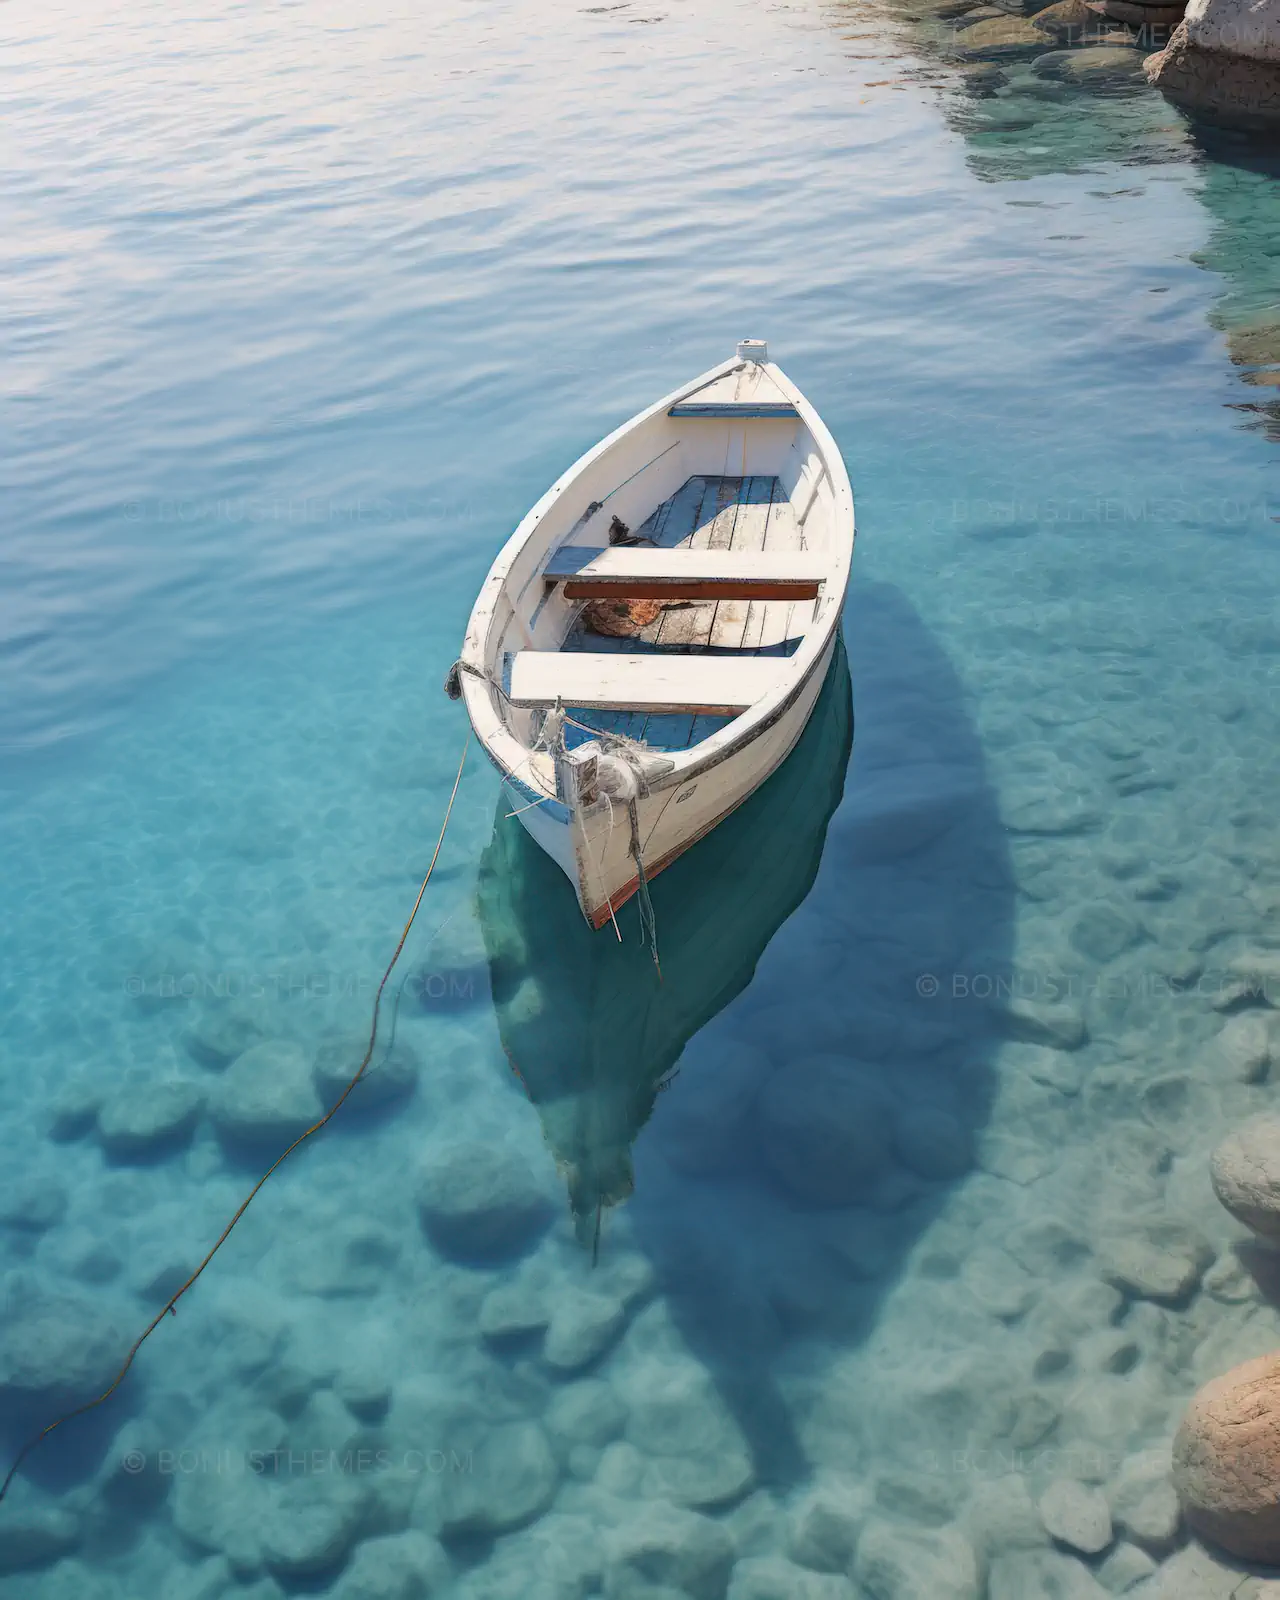 Aegean life boat on the sea